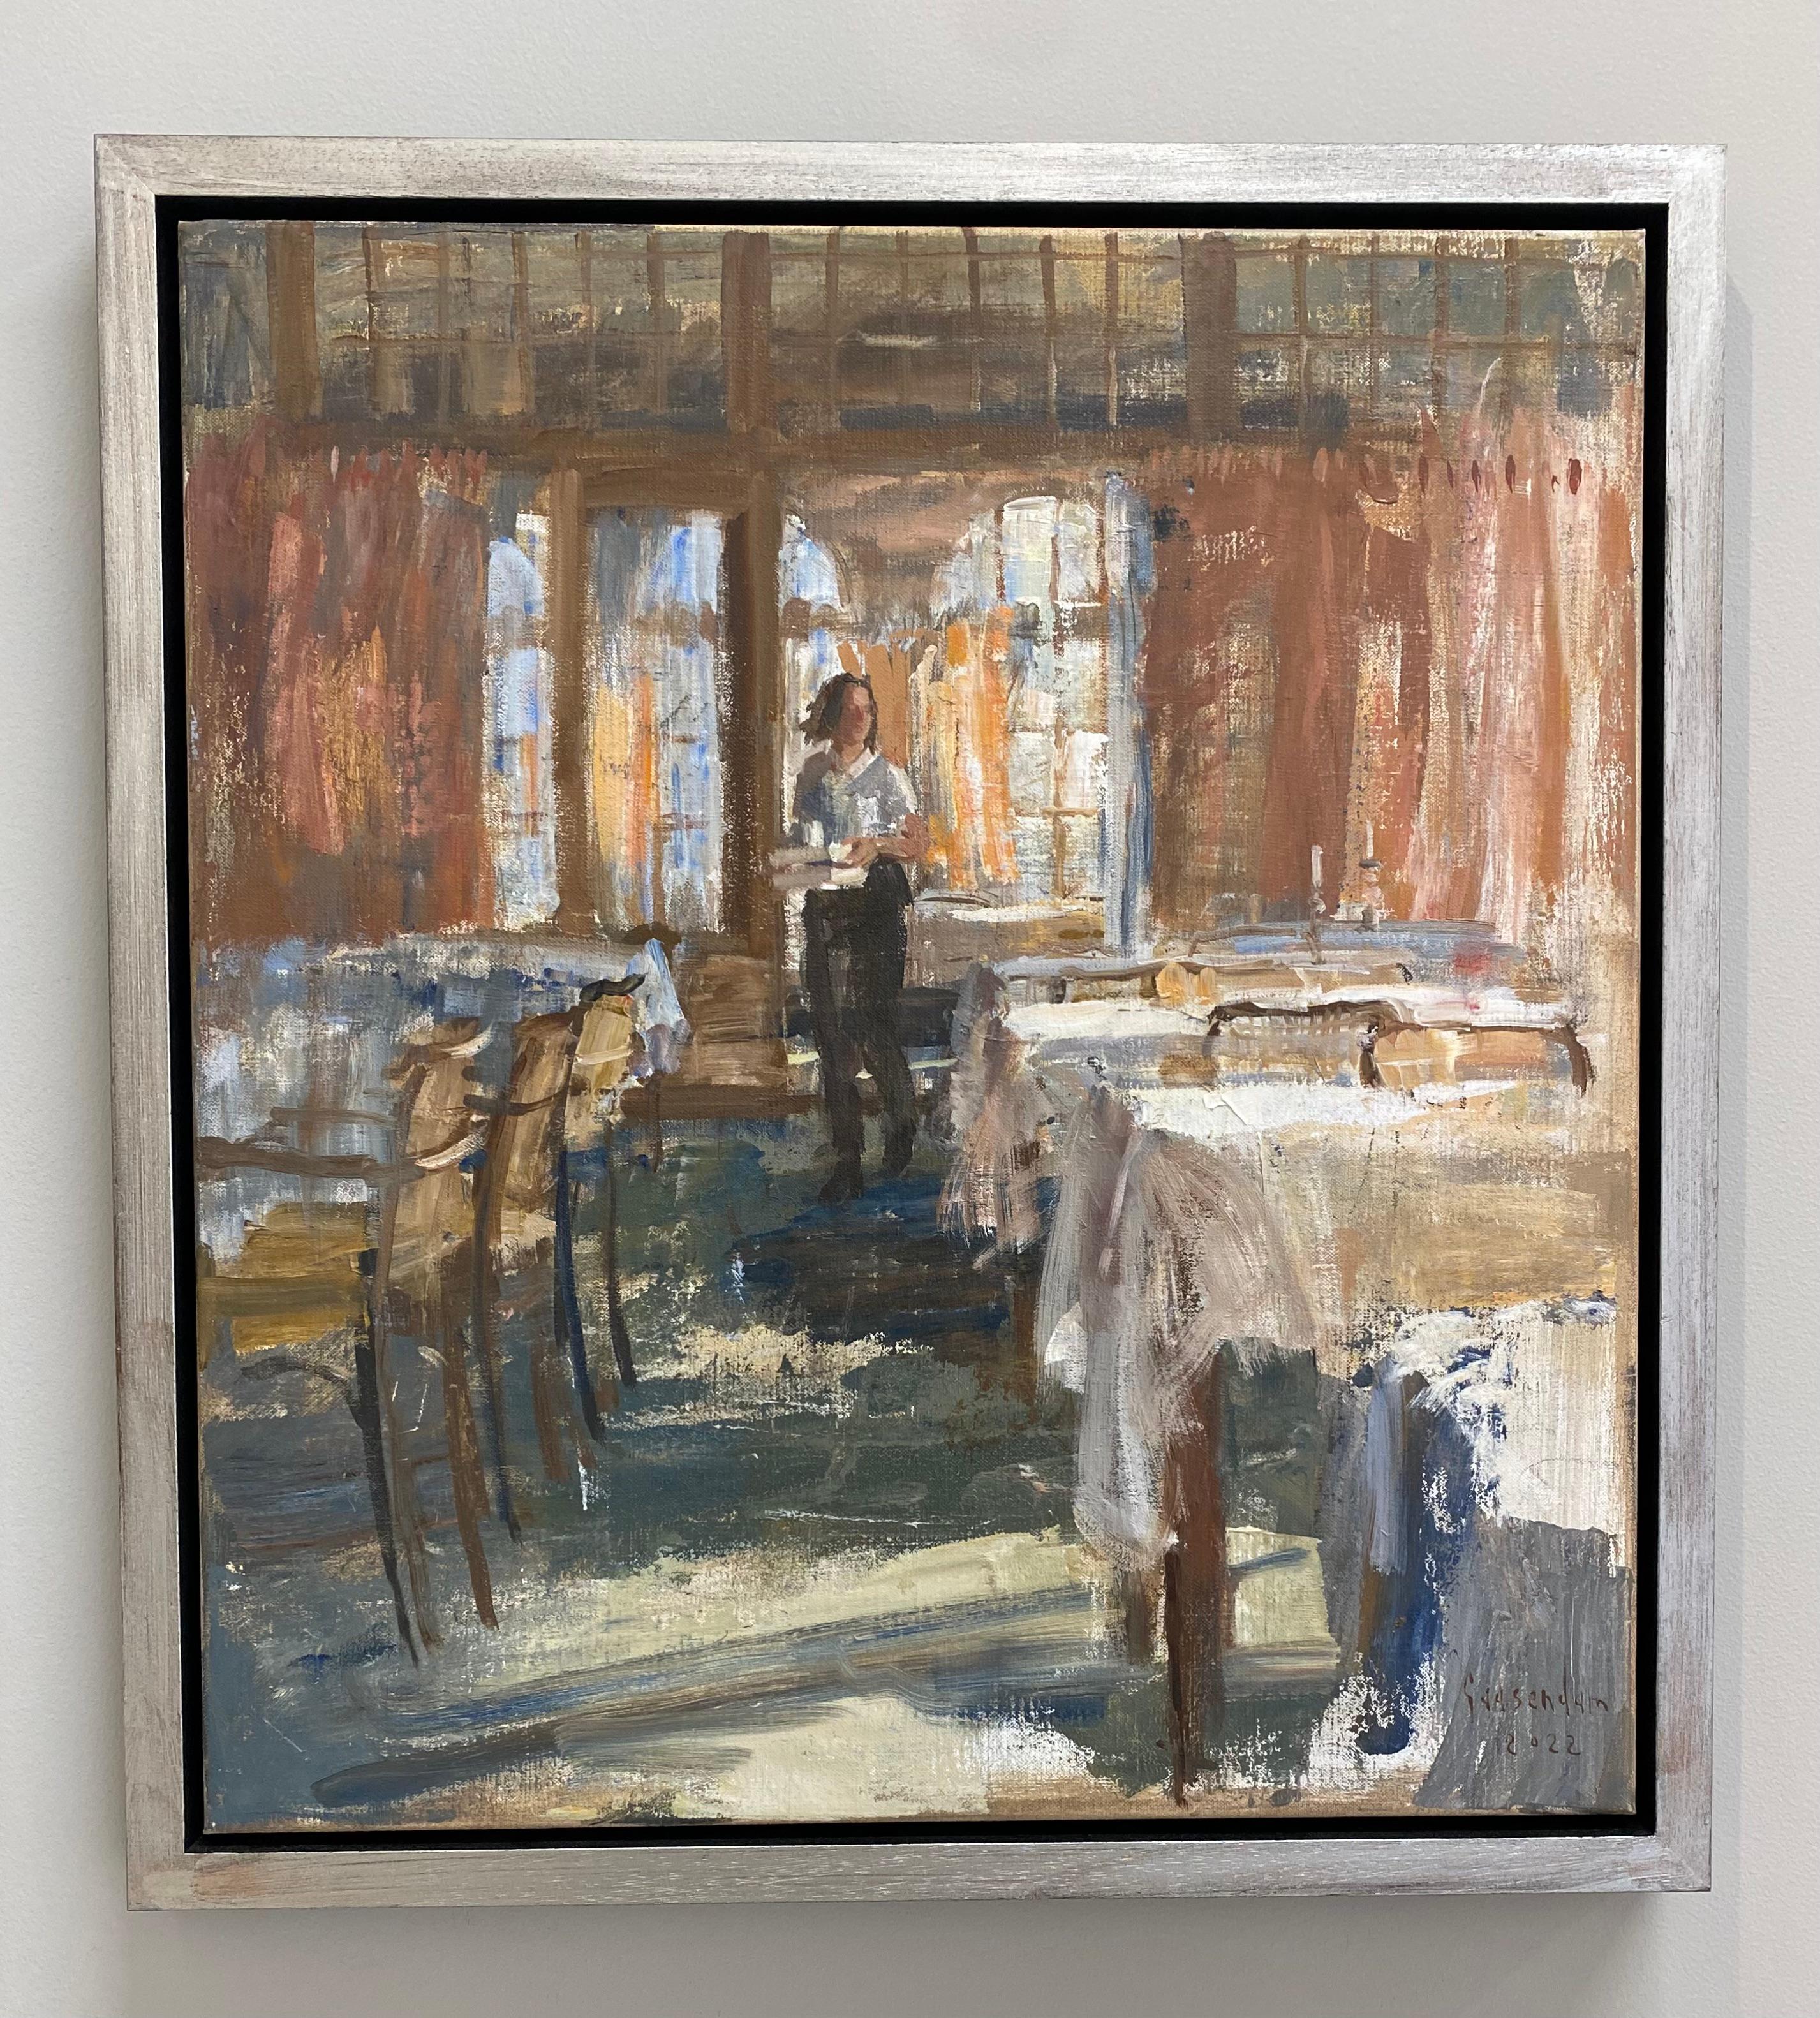 Le service, peinture contemporaine du 21e siècle d'un  serveur dans un restaurant - Painting de Flip Gaasendam